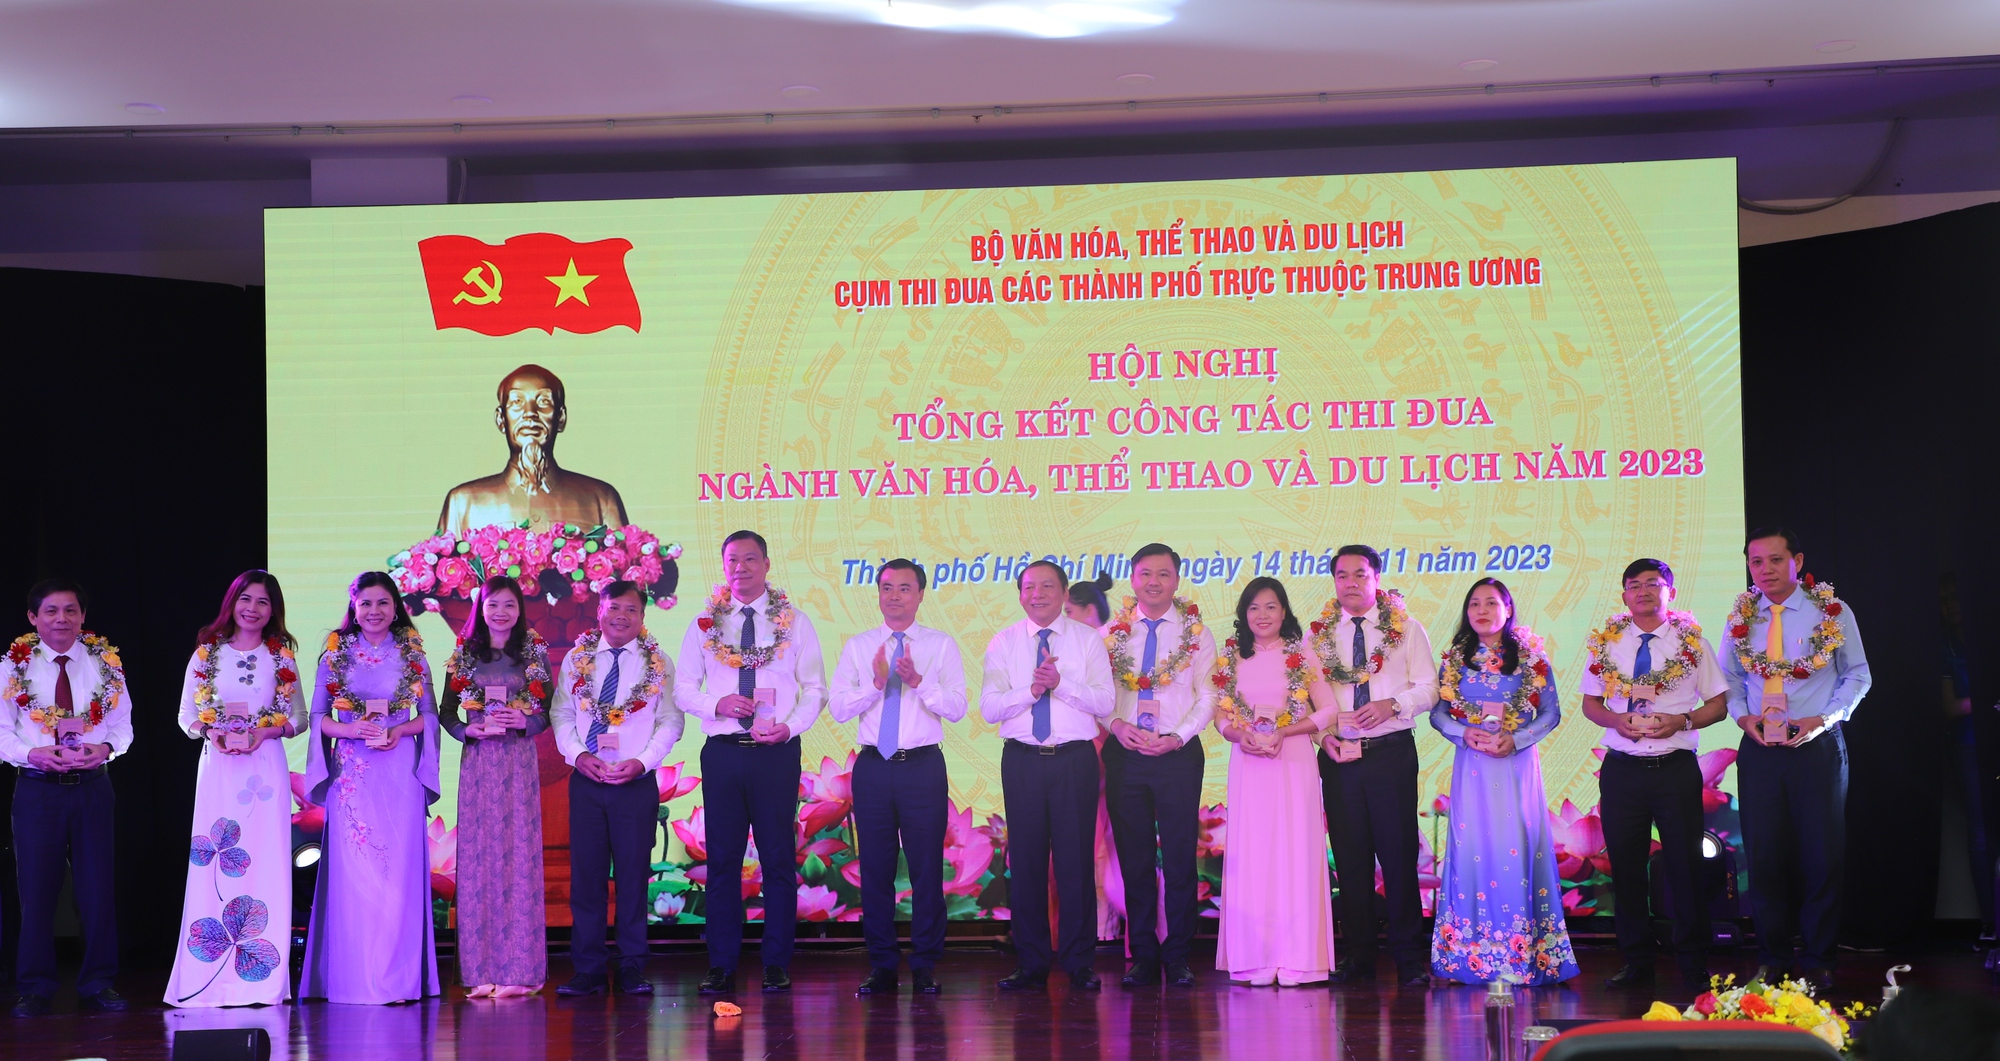 Bộ trưởng Nguyễn Văn Hùng: Người làm văn hóa phải yêu văn hóa, hiểu văn hóa và trọng văn hóa - Ảnh 1.